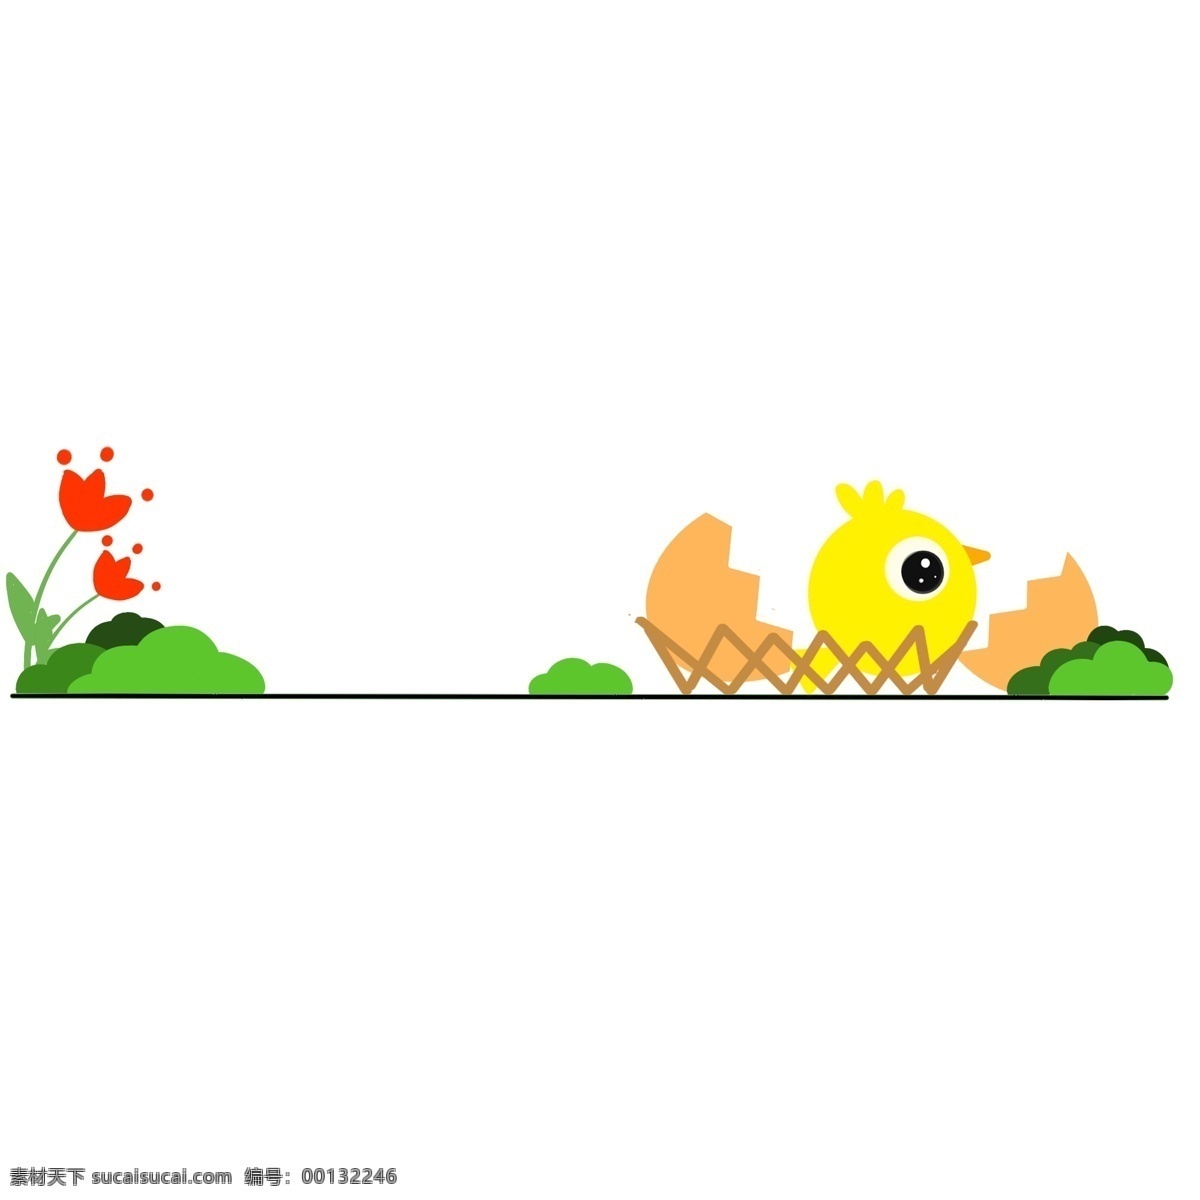 黄色 小鸡 分割线 插画 红色 花朵 植物分割线 绿色分割线 动物分割线 小鸡分割线